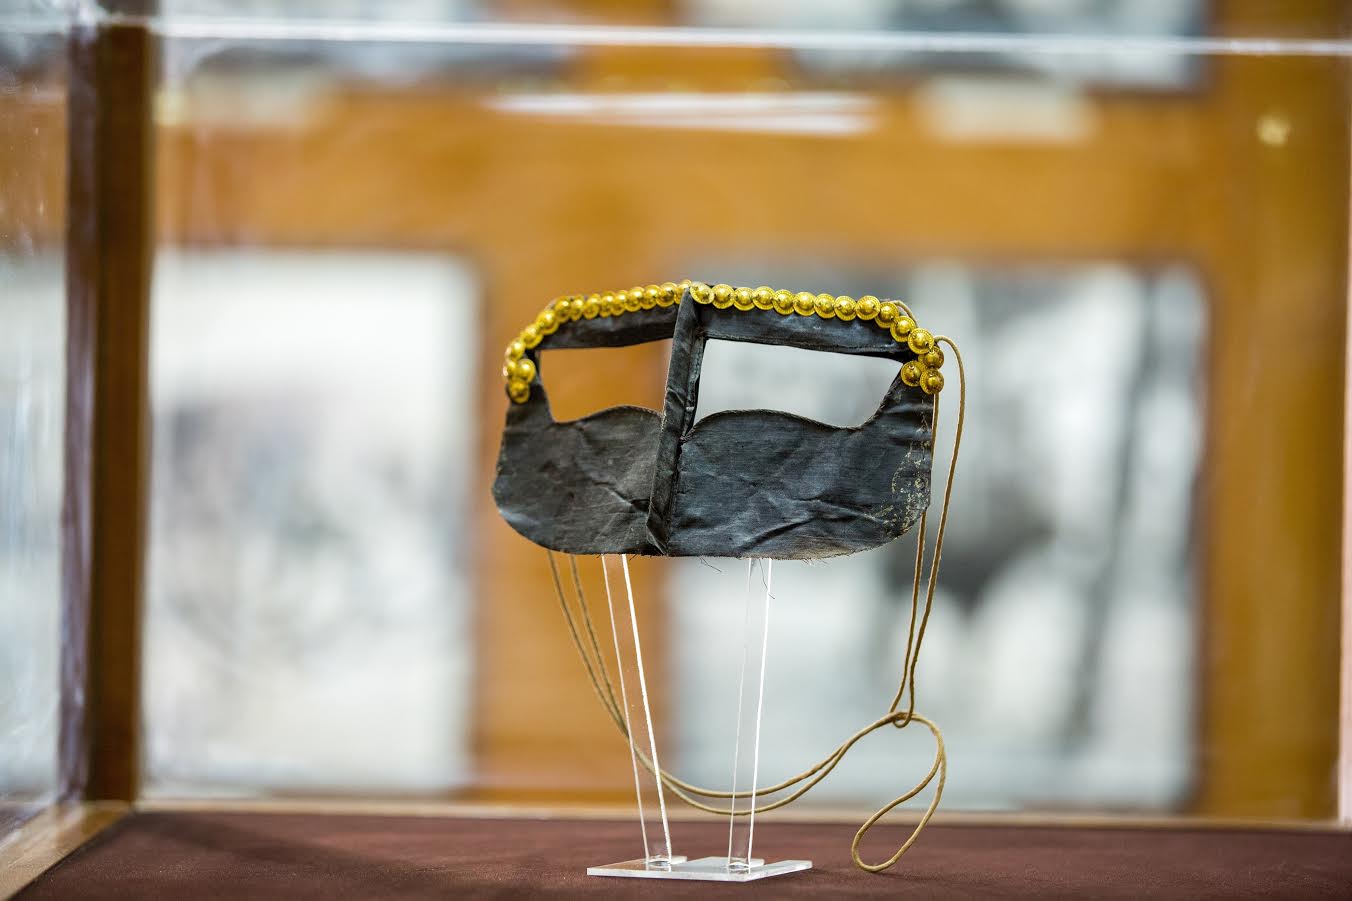 متحف العين الوطني يسلط الضوء على قطعة برقع بونيوم - عين دبي